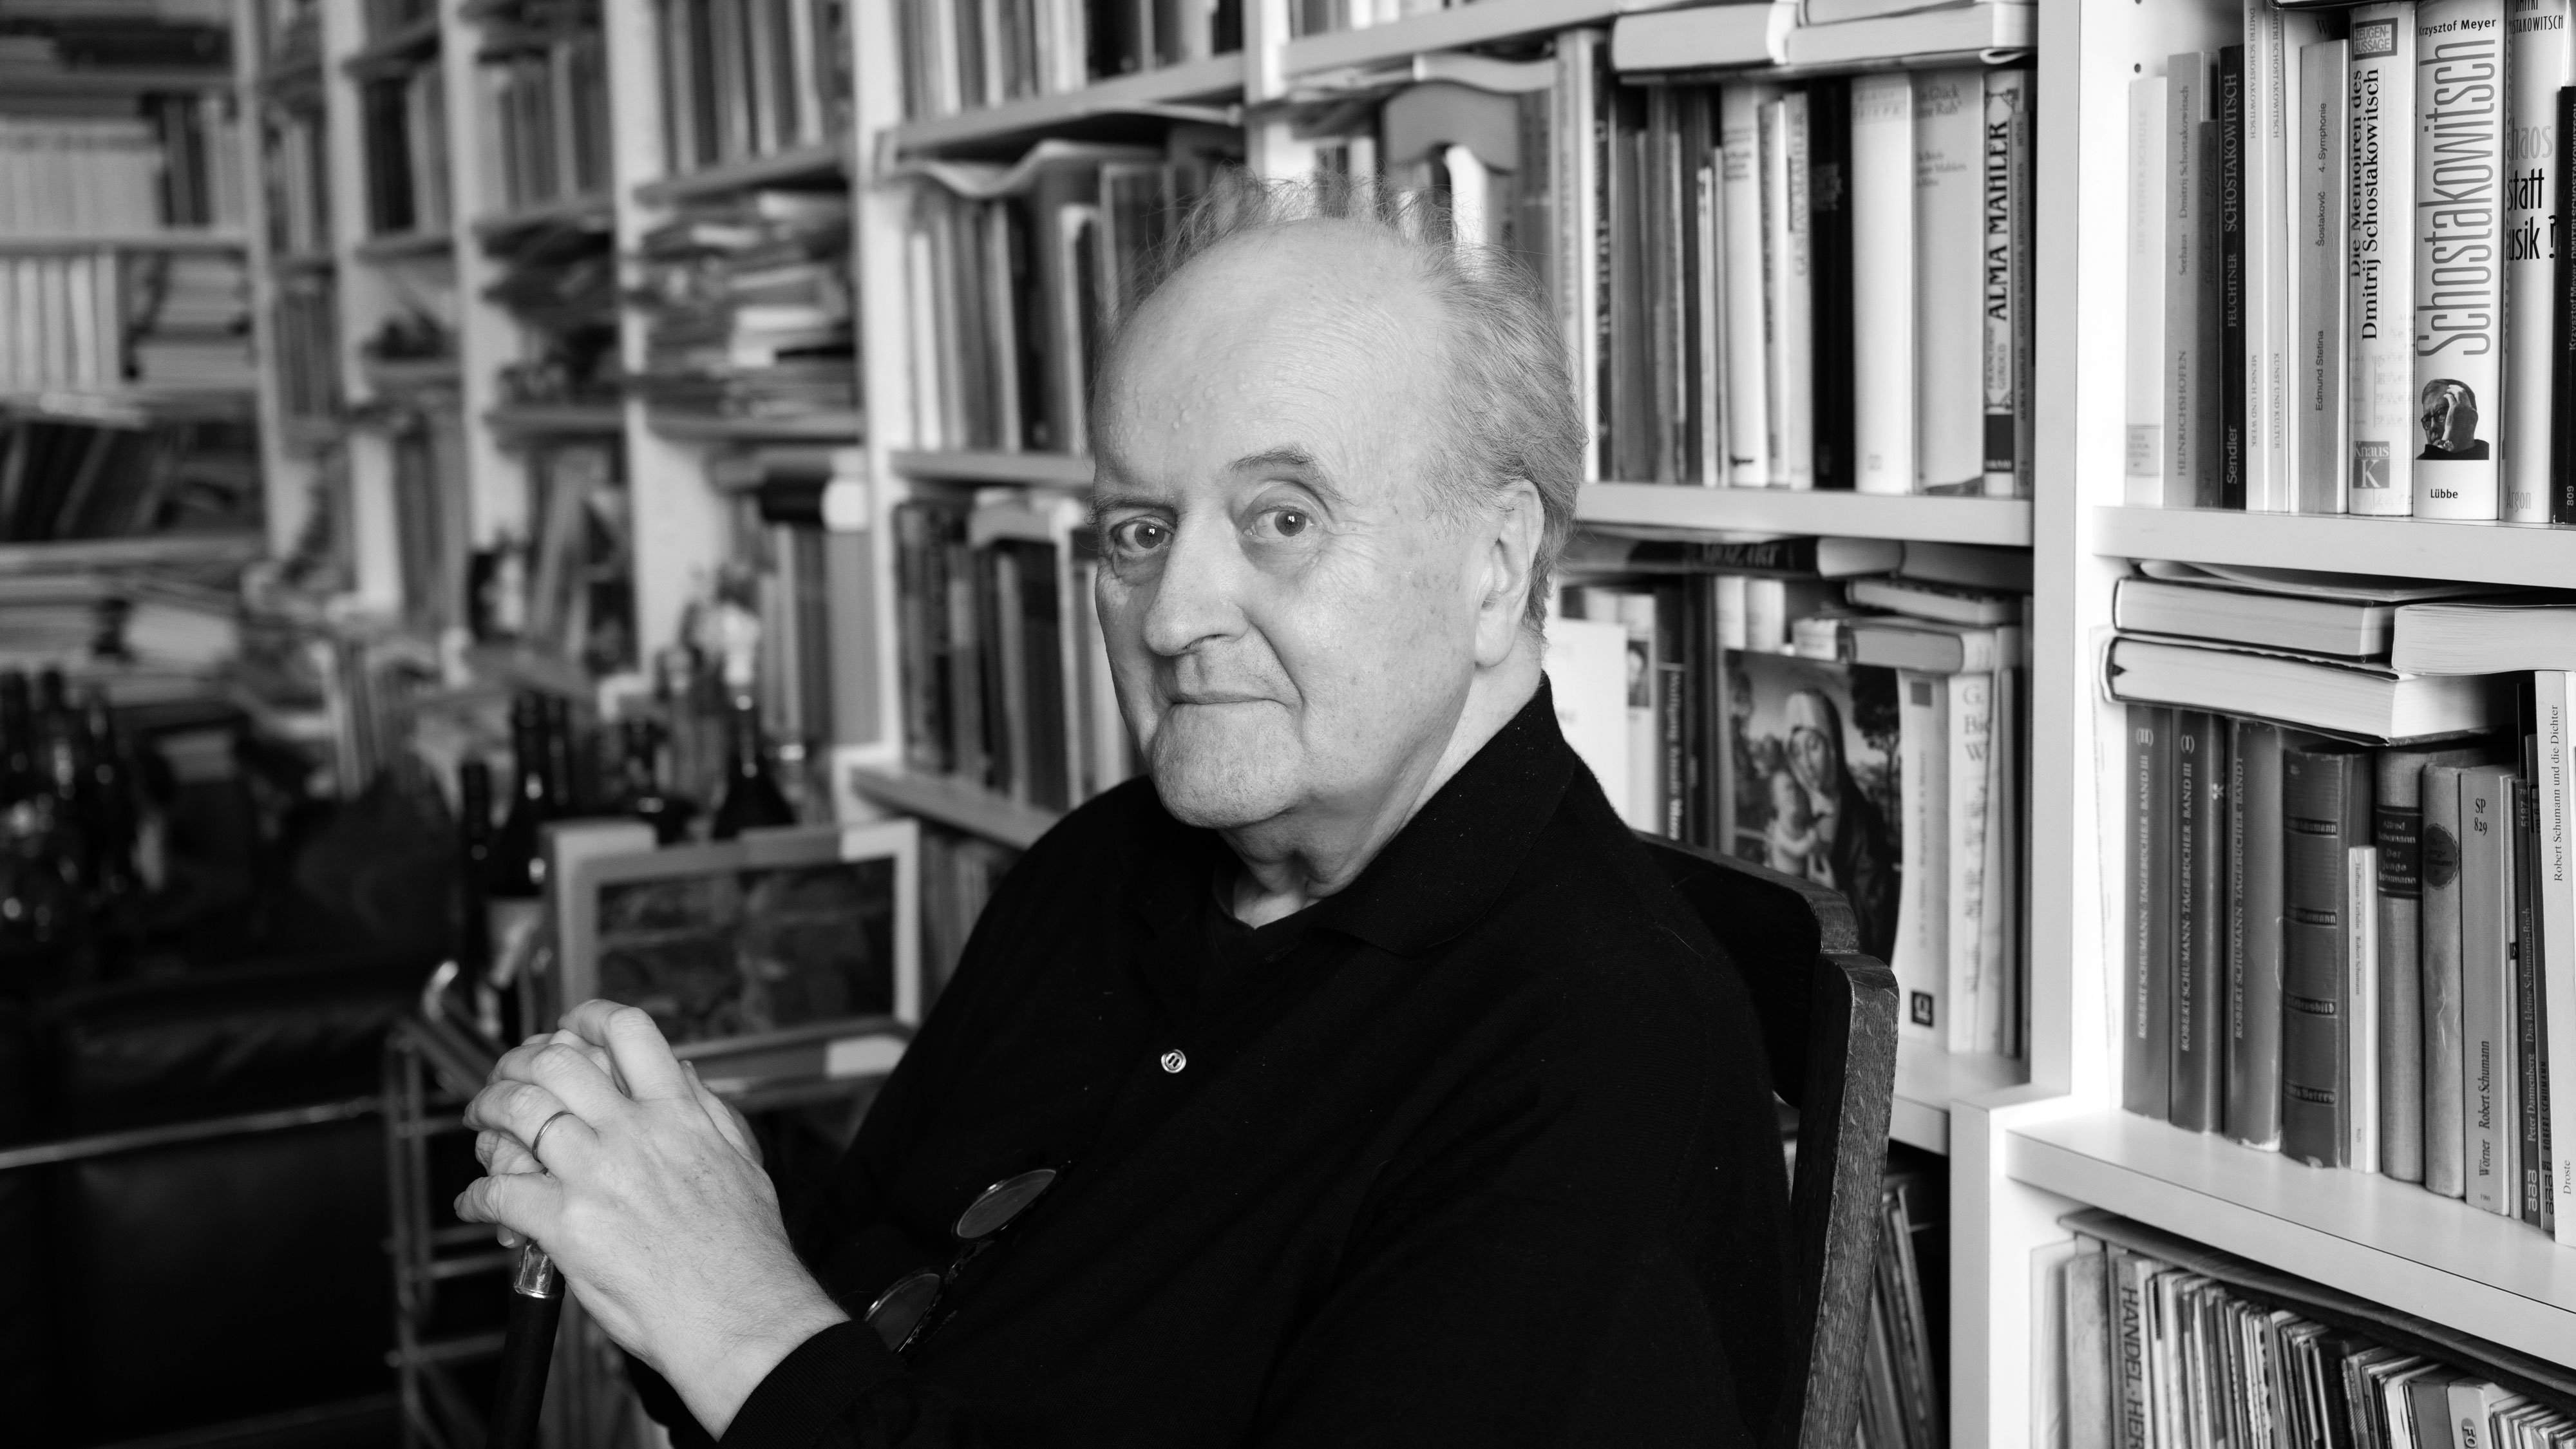 Ein älterer Mann sitzt vor einem vollen Bücherregal. Er hat schütteres Haar und trägt einen dunklen Pullover. In seiner Hand hält er einen Gehstock. Das Bild ist in Schwarz-Weiß gehalten.